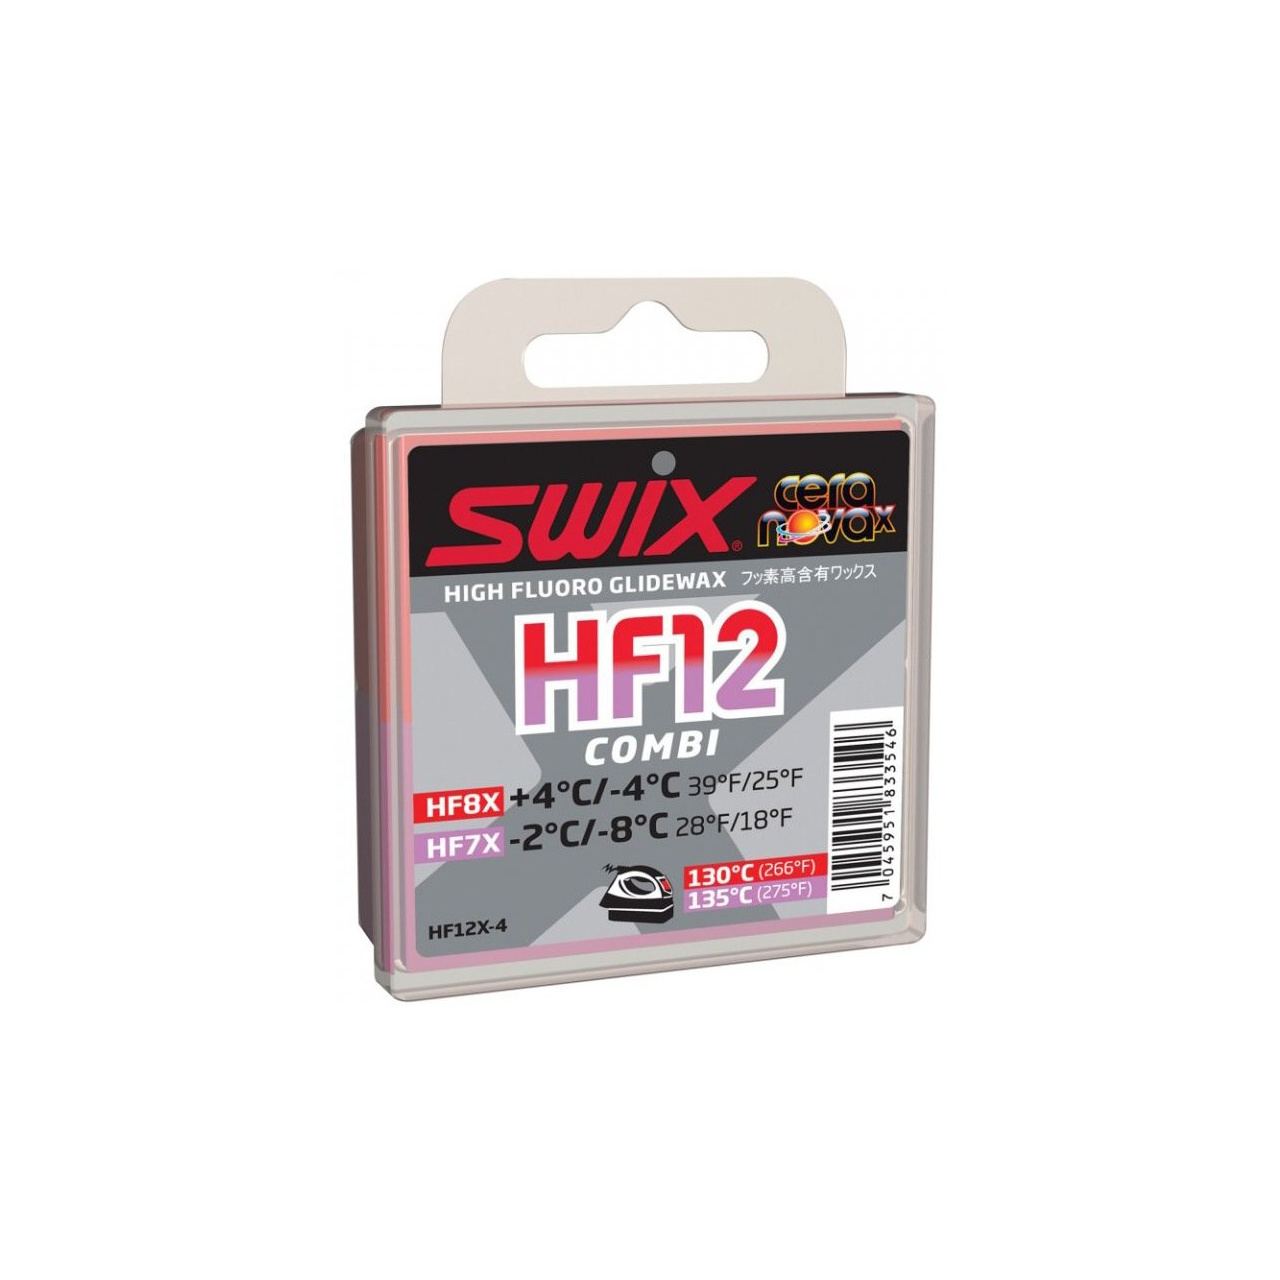 Swix HF12X-4 Combi